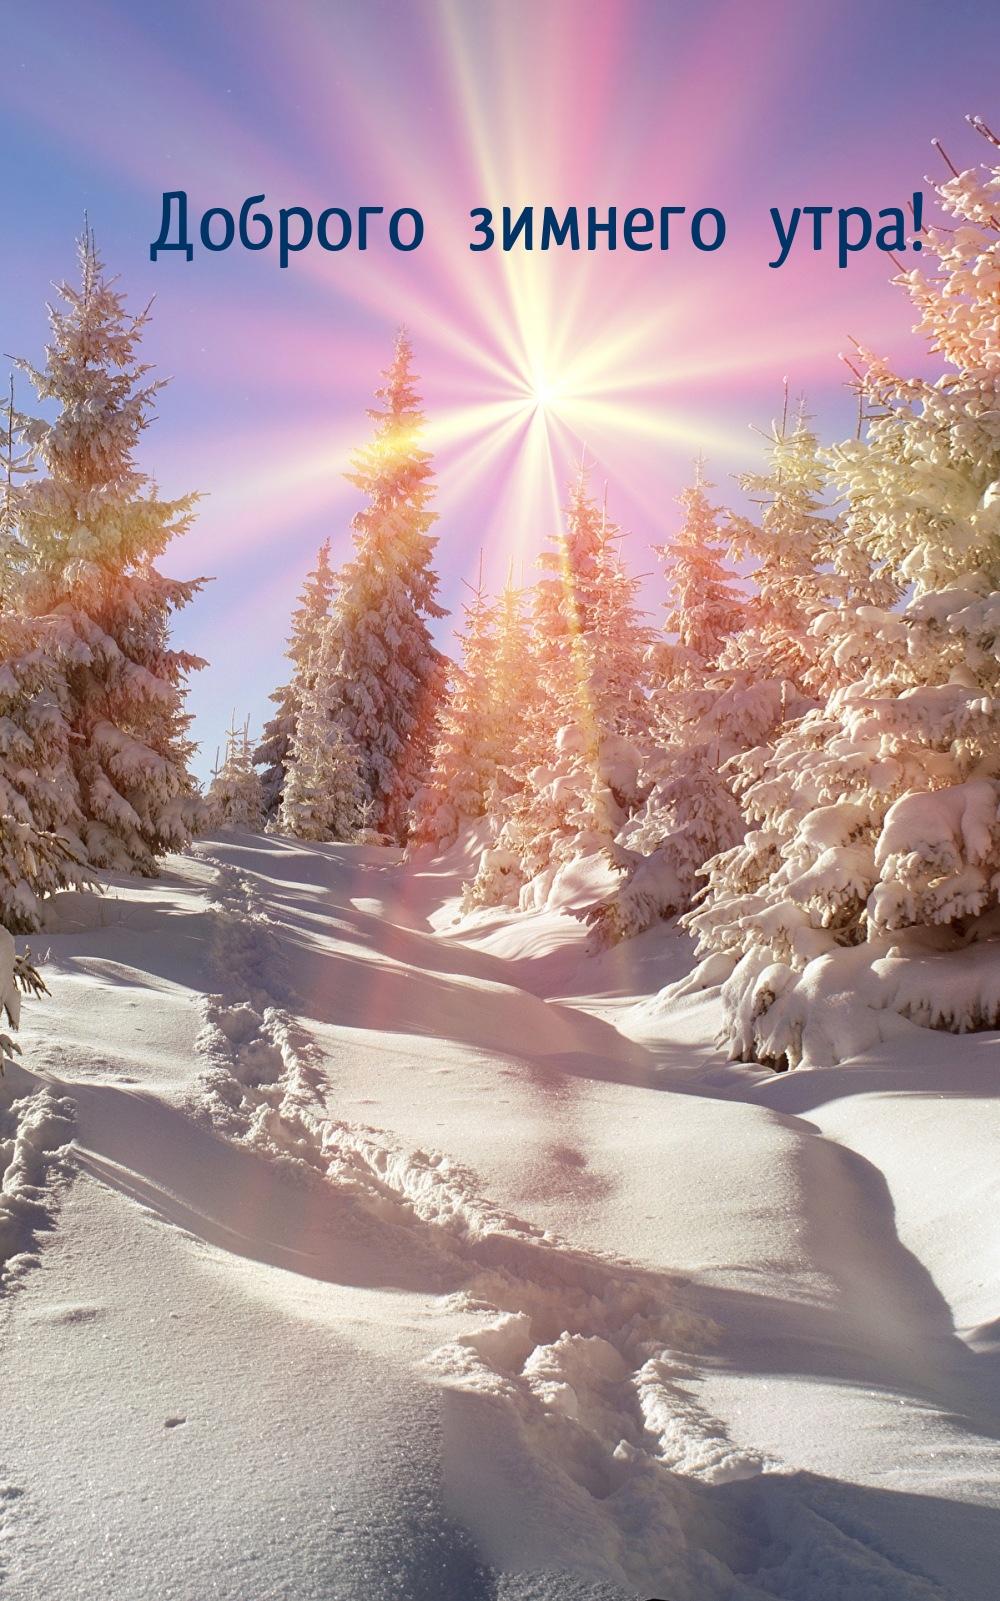 Доброе зимнее утро пятницы (30 фото) — Красивые картинки